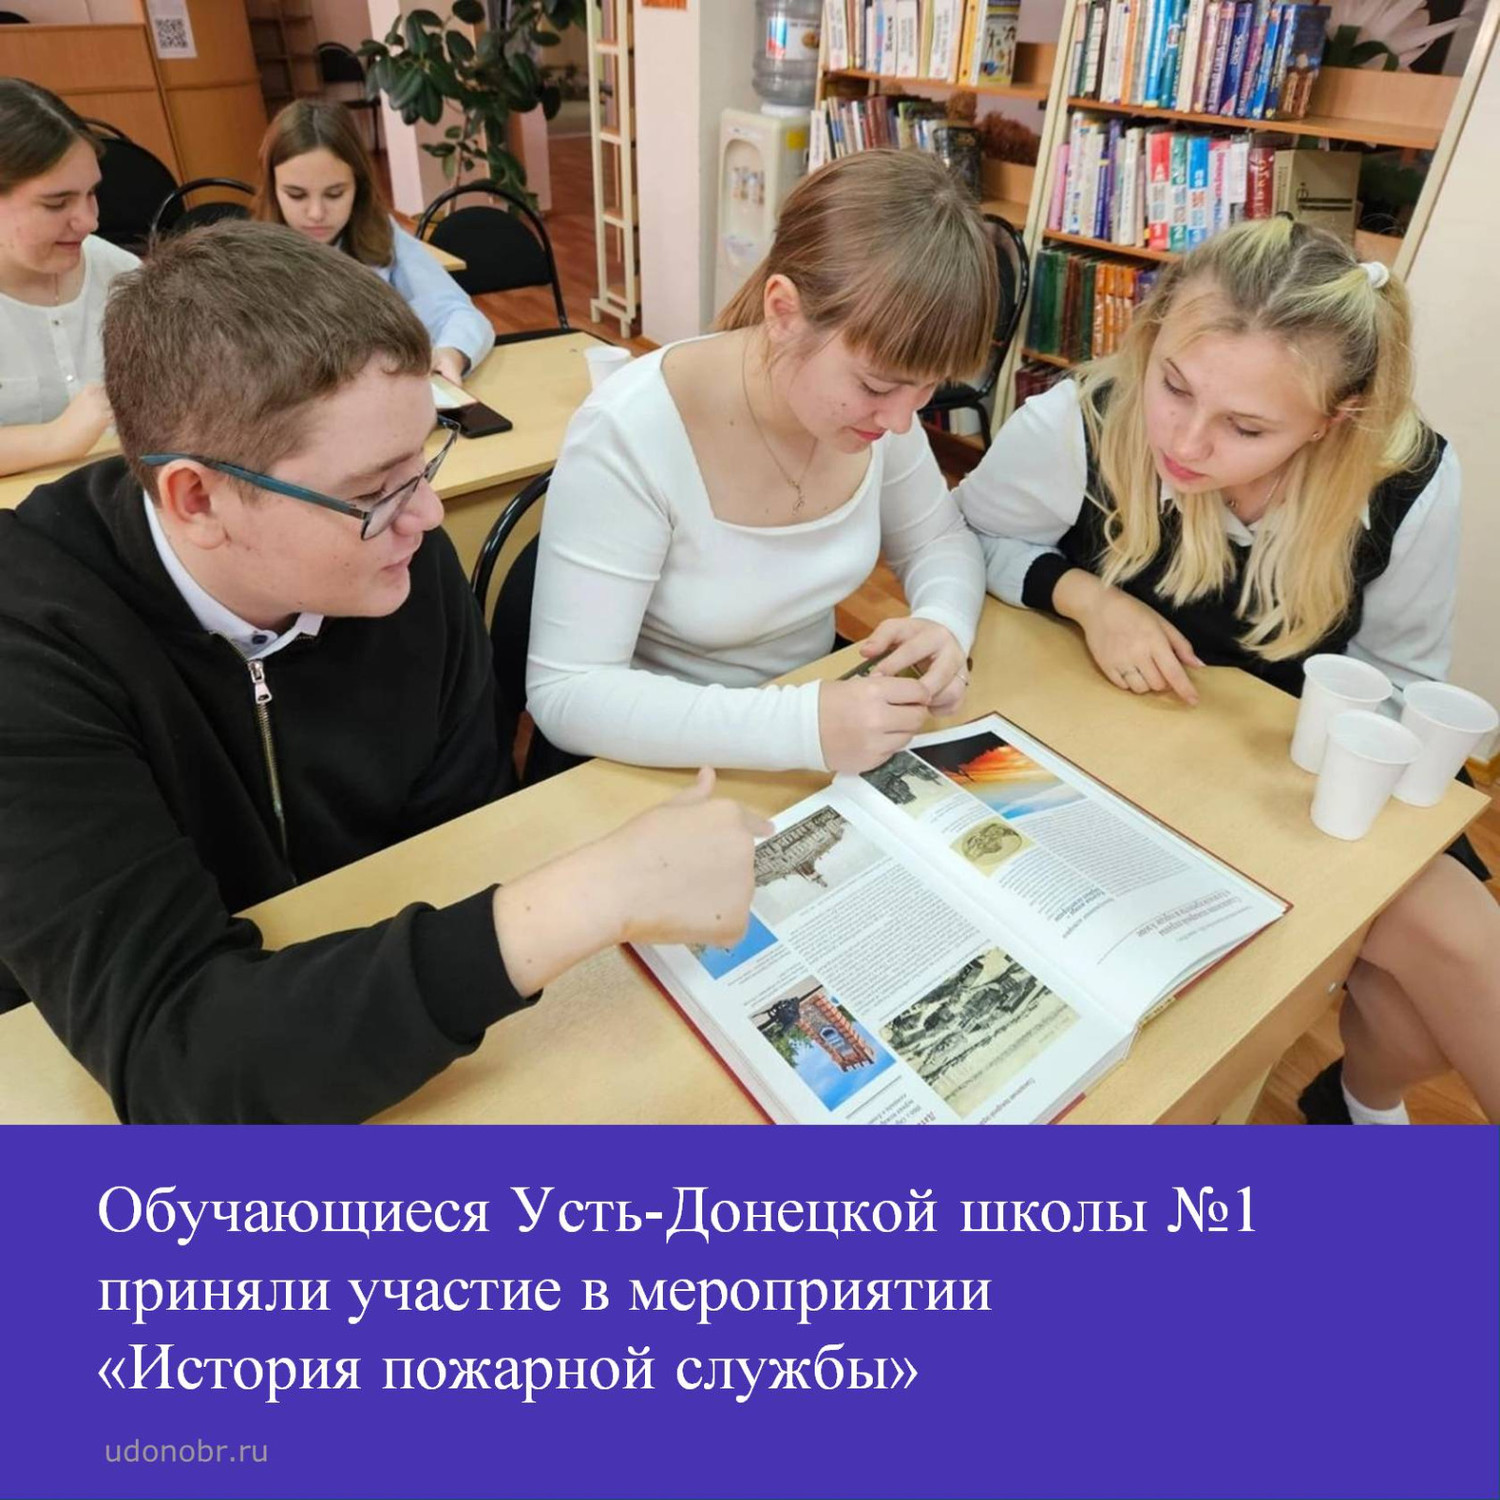 Обучающиеся Усть-Донецкой школы №1 приняли участие в мероприятии « История пожарной службы»